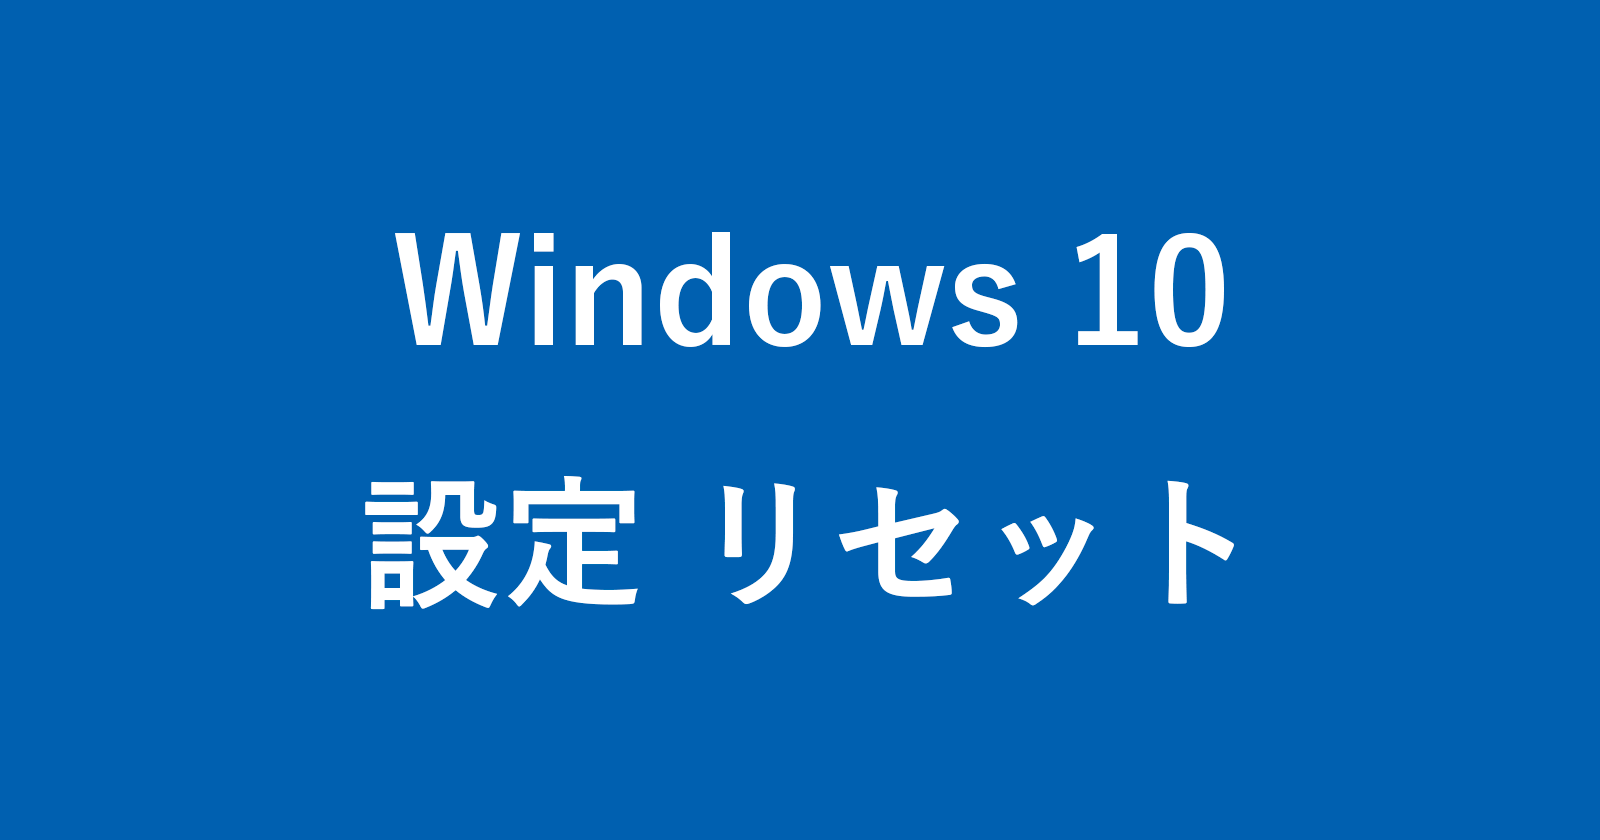 windows 10 reset settings app